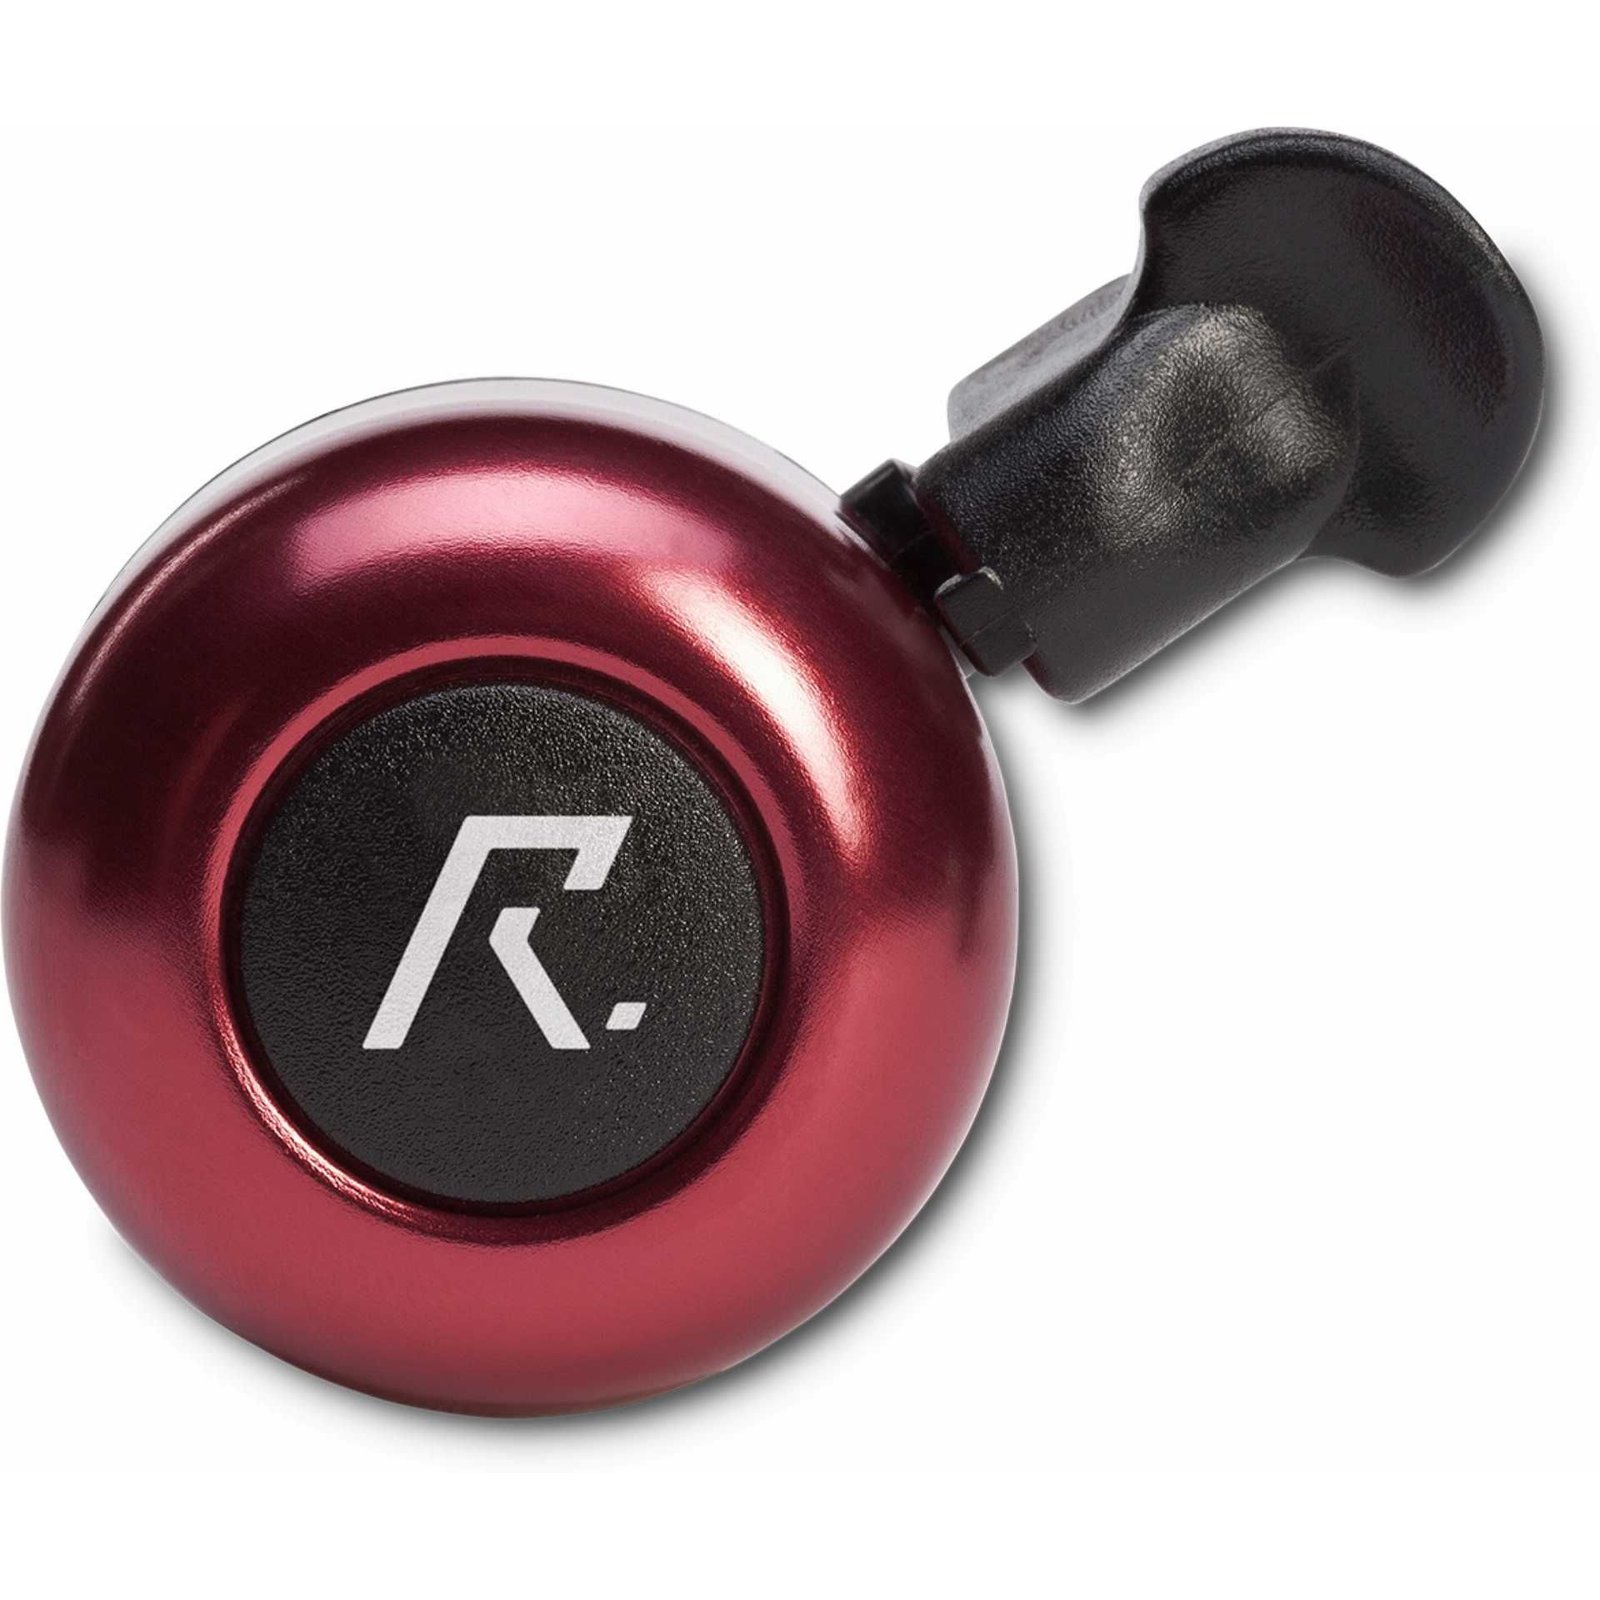 RFR Klingel Standard rot